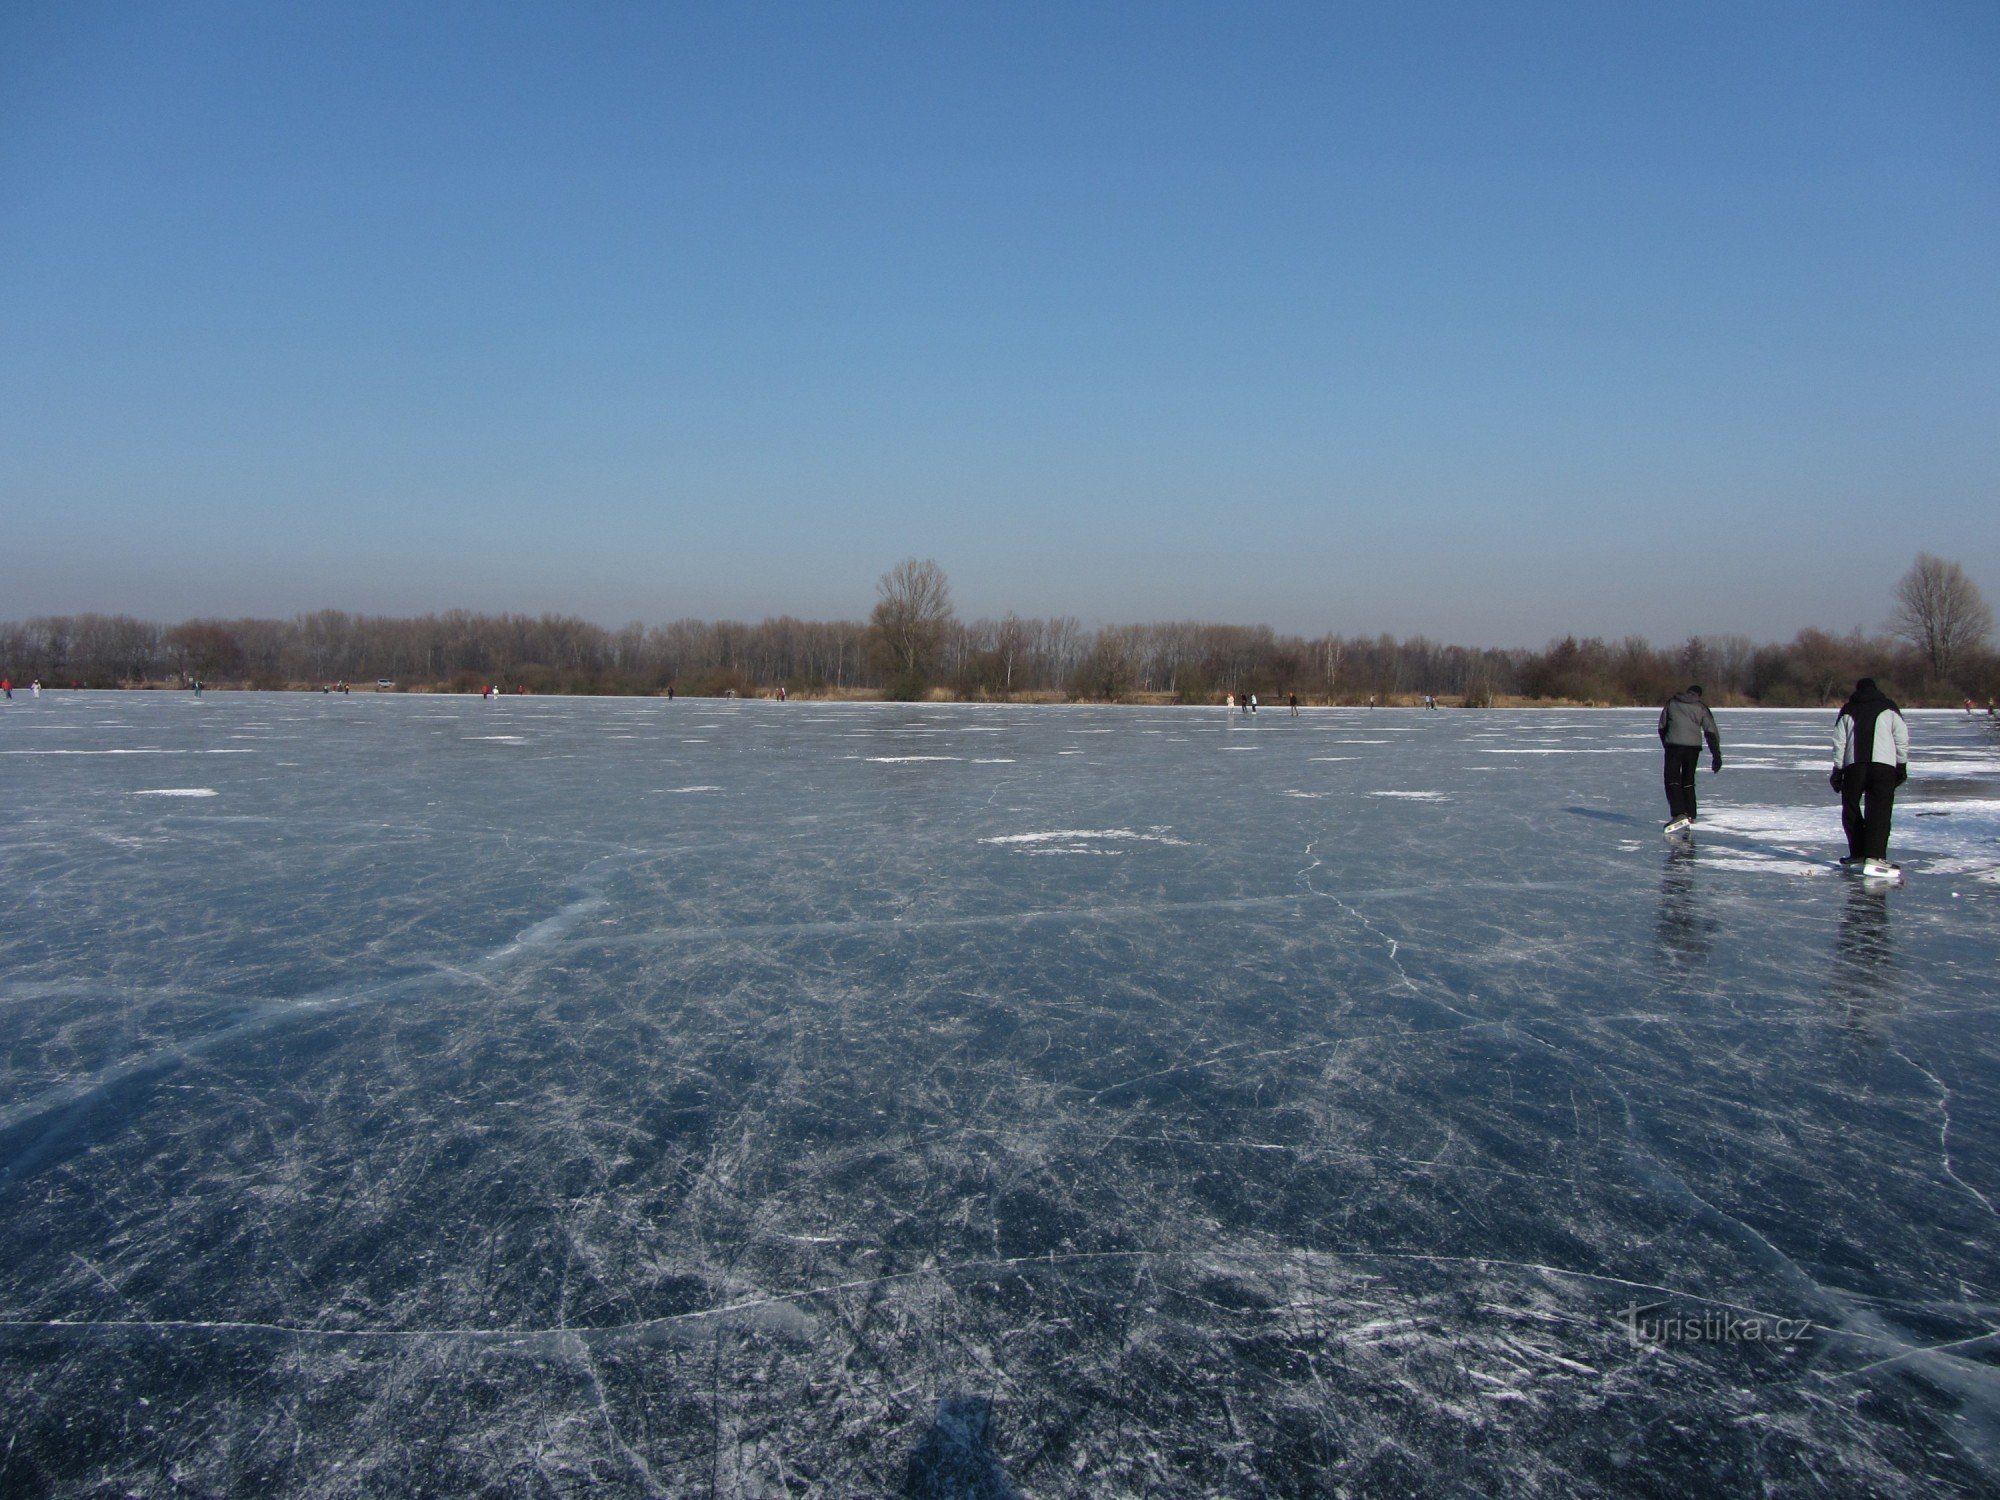 Zone de glace à Poděbrady près d'Olomouc (février 2012)